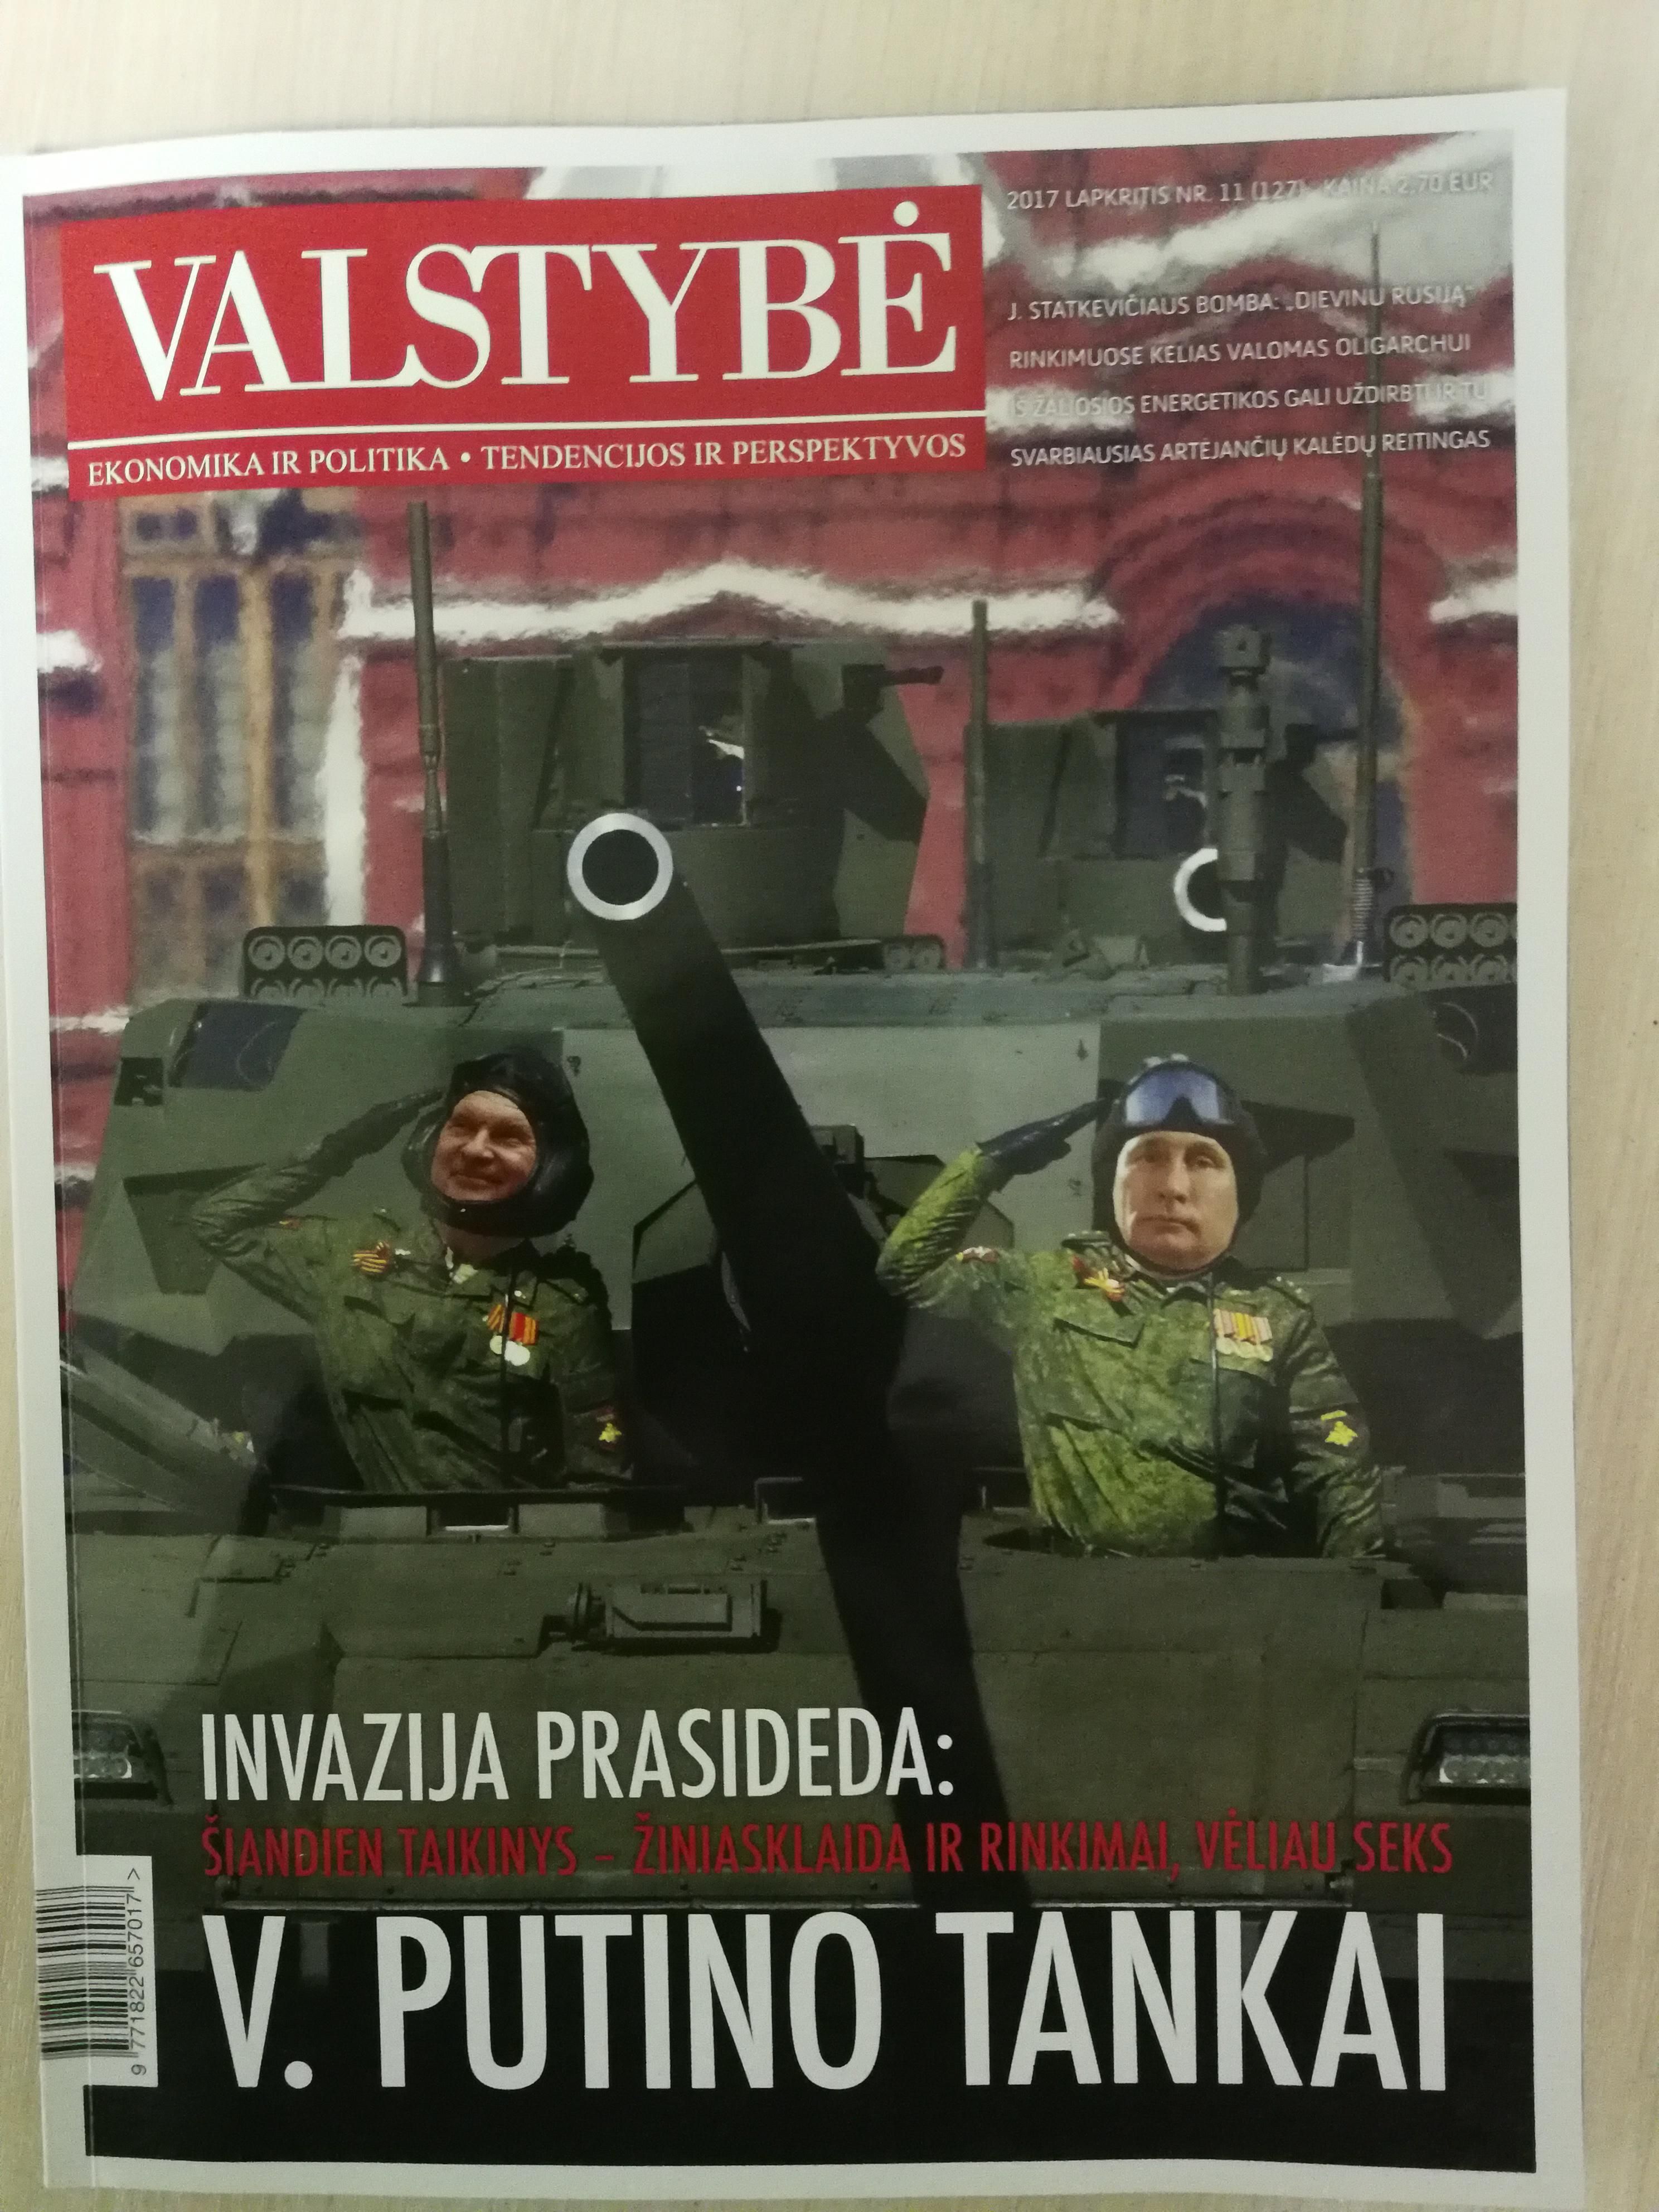 <b>Ровно год назад:</b> Обложка ноябрьского номера журнала "Valstybe", организовавшего "энергетическую" конференцию